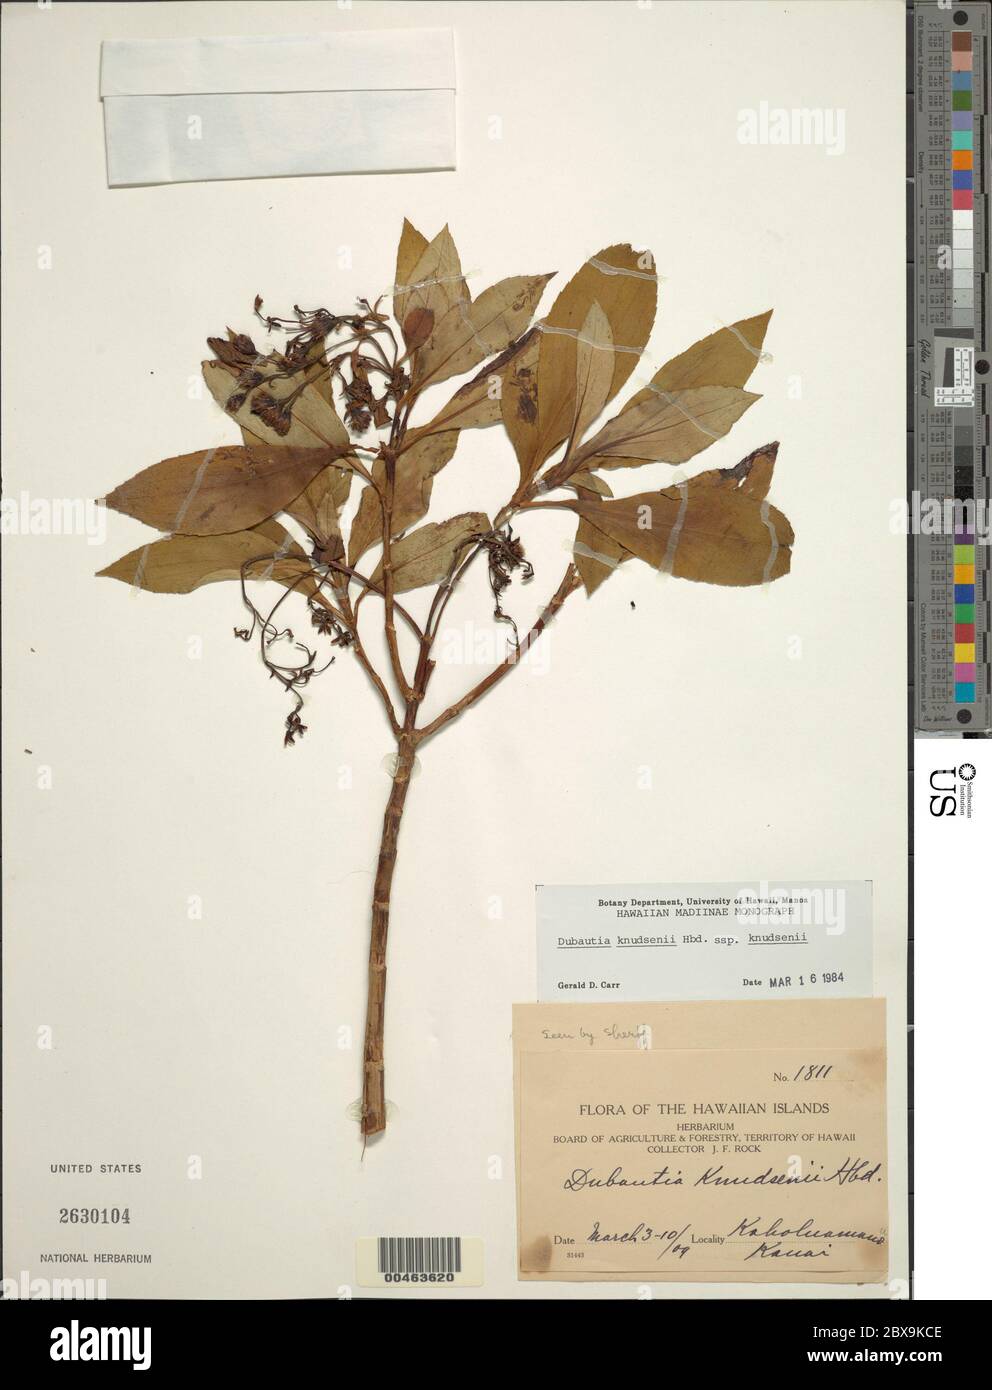 Dubautia knudsenii Hillebr subsp knudsenii Dubautia knudsenii Hillebr subsp knudsenii. Stock Photo